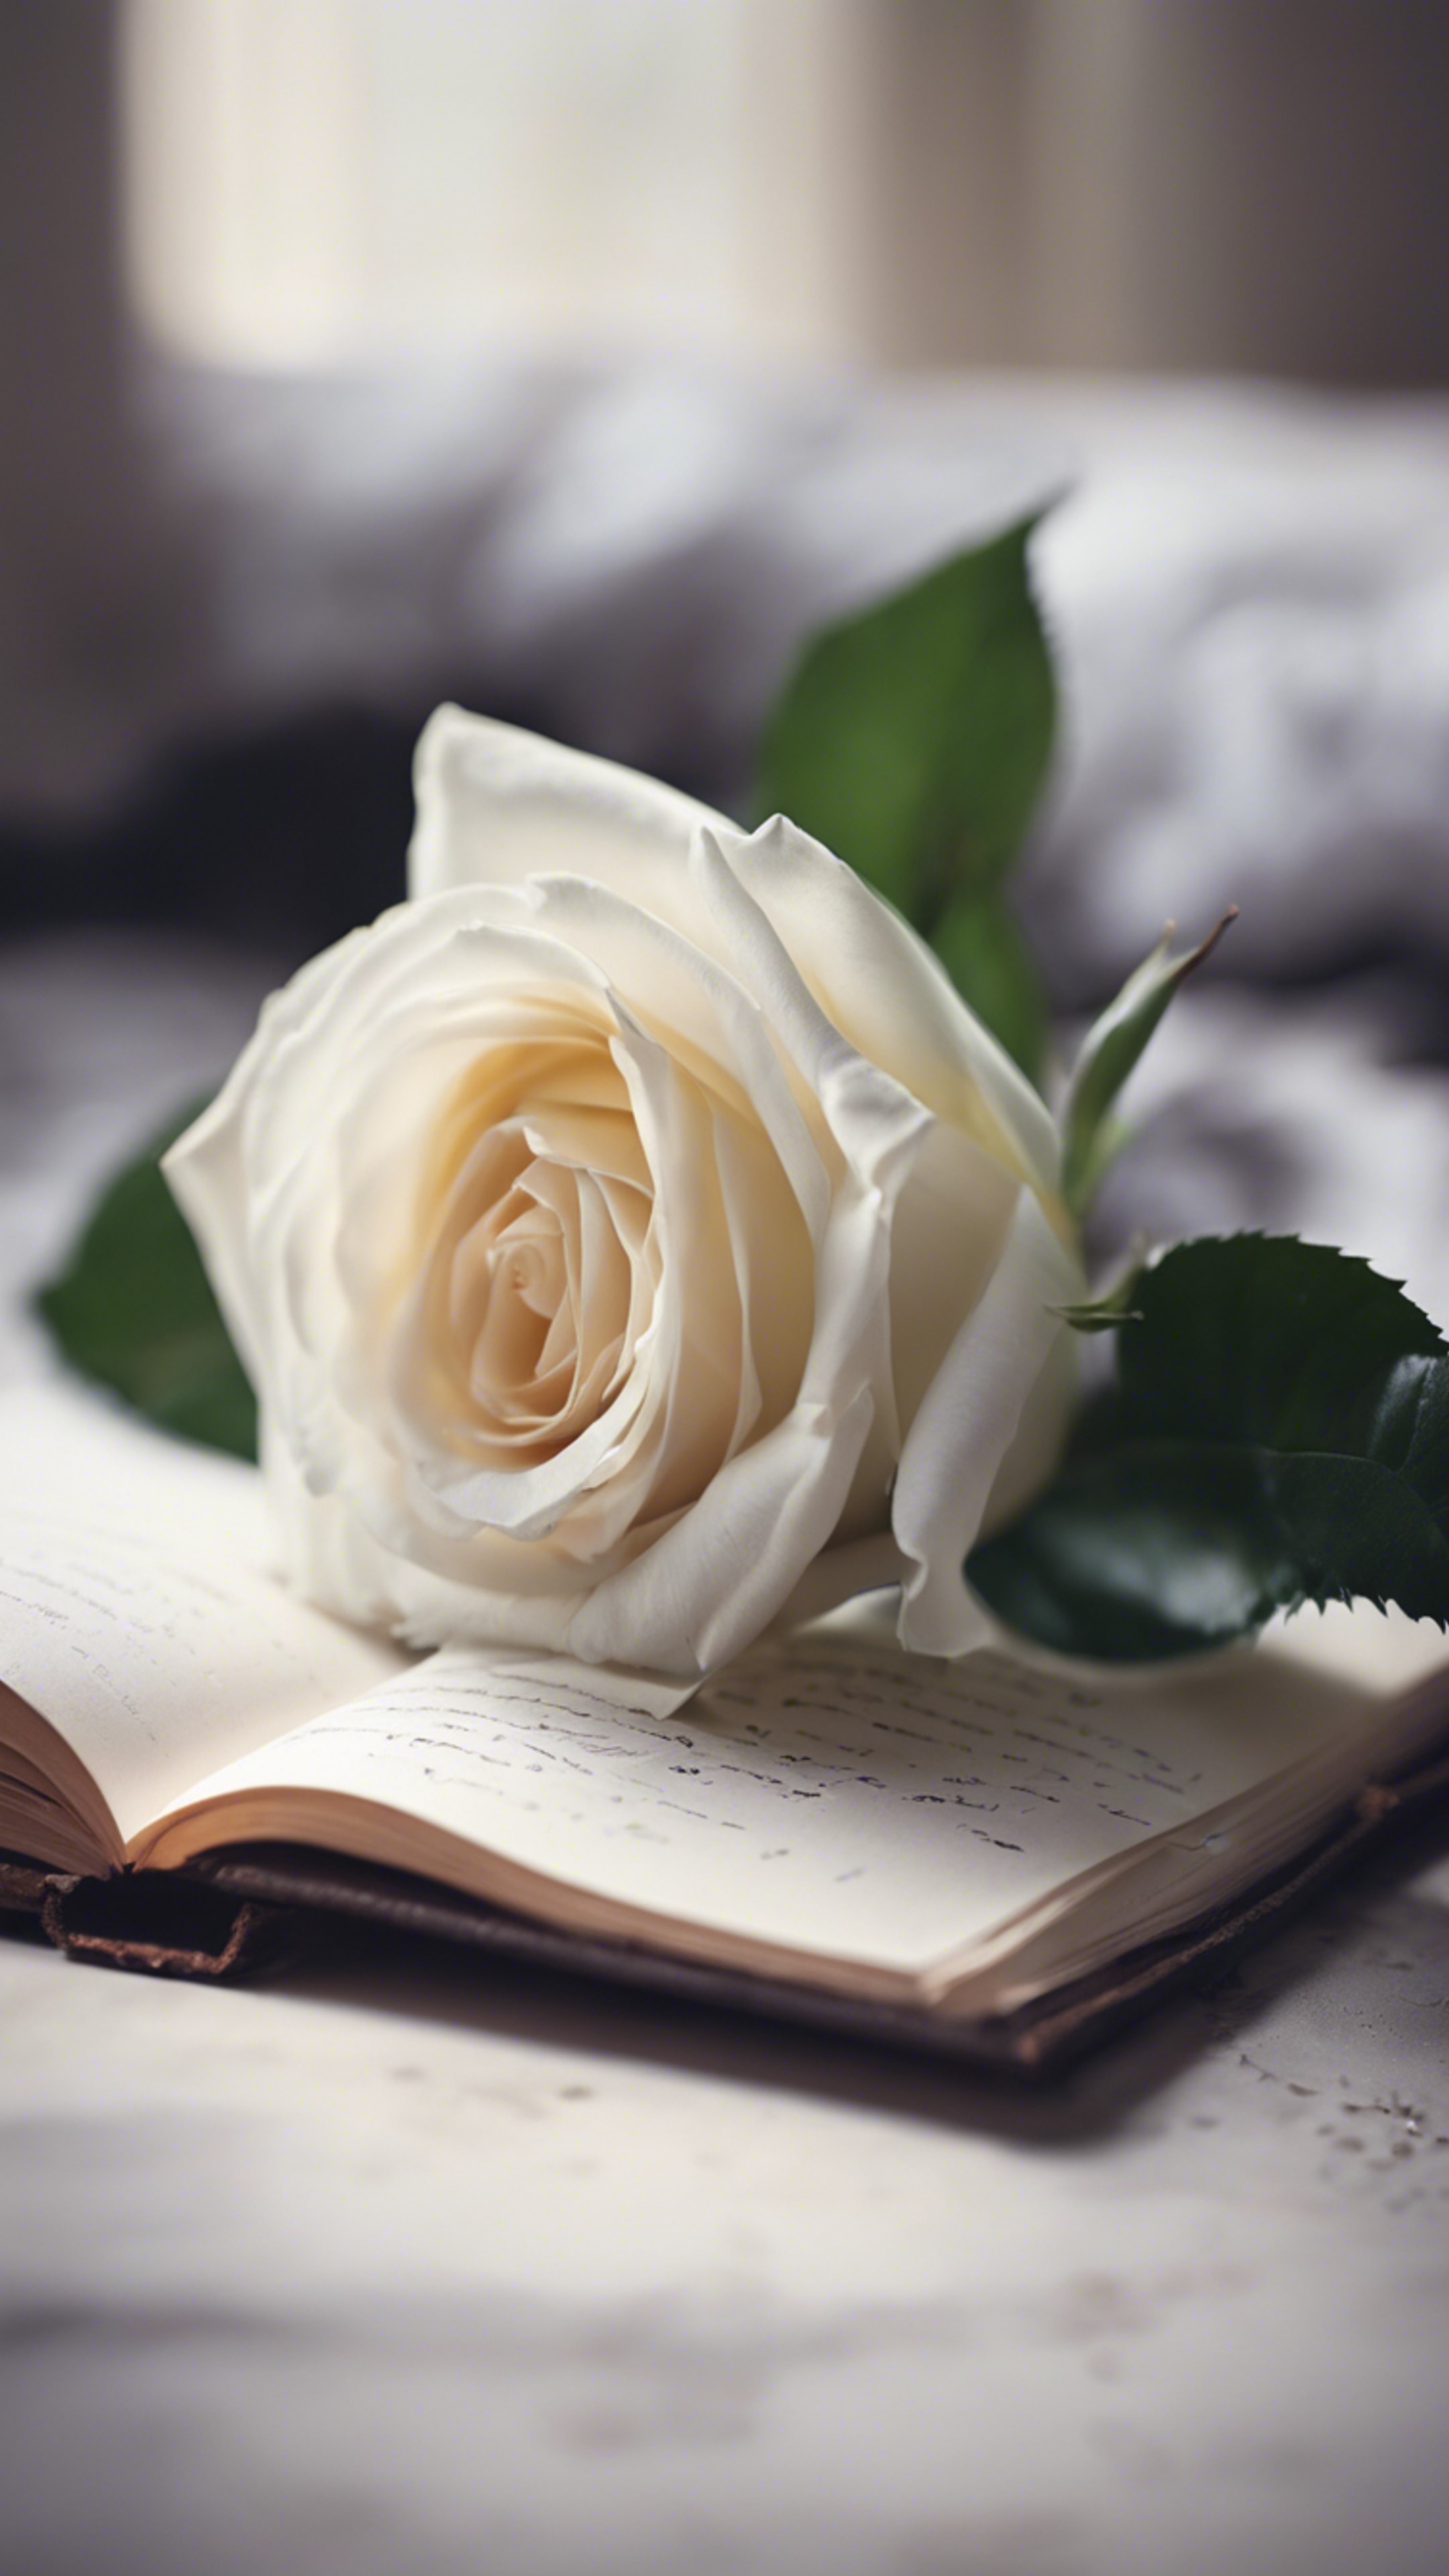 A handwritten confession of love adorned by a fresh, white rose. Tapeta[ca91da3bae694a85a8d6]